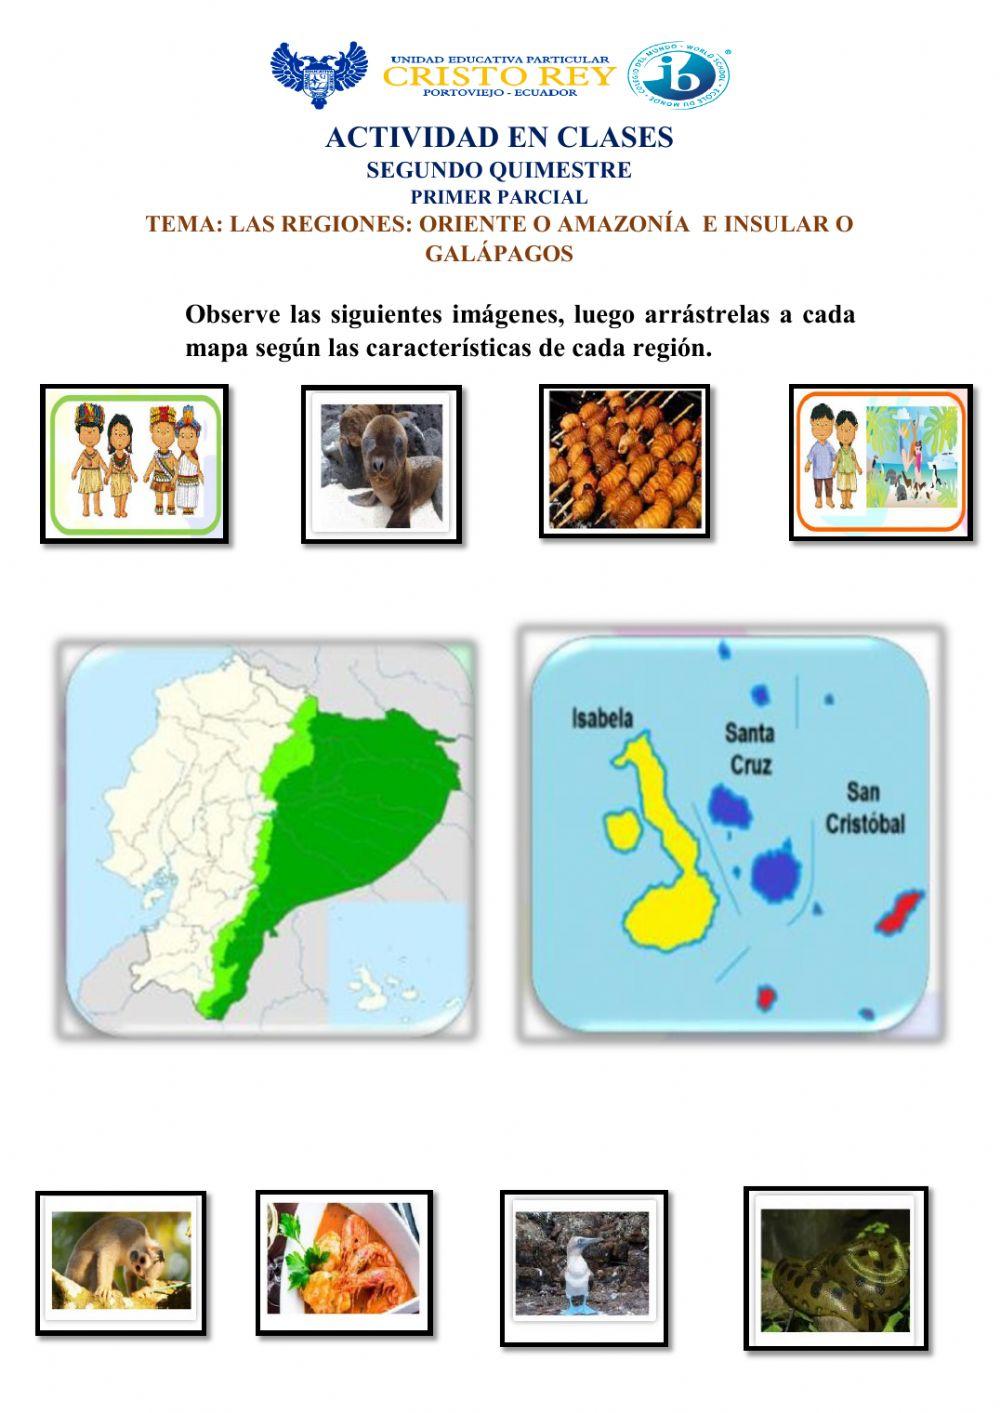 Las regiones Oriente y Galápagos